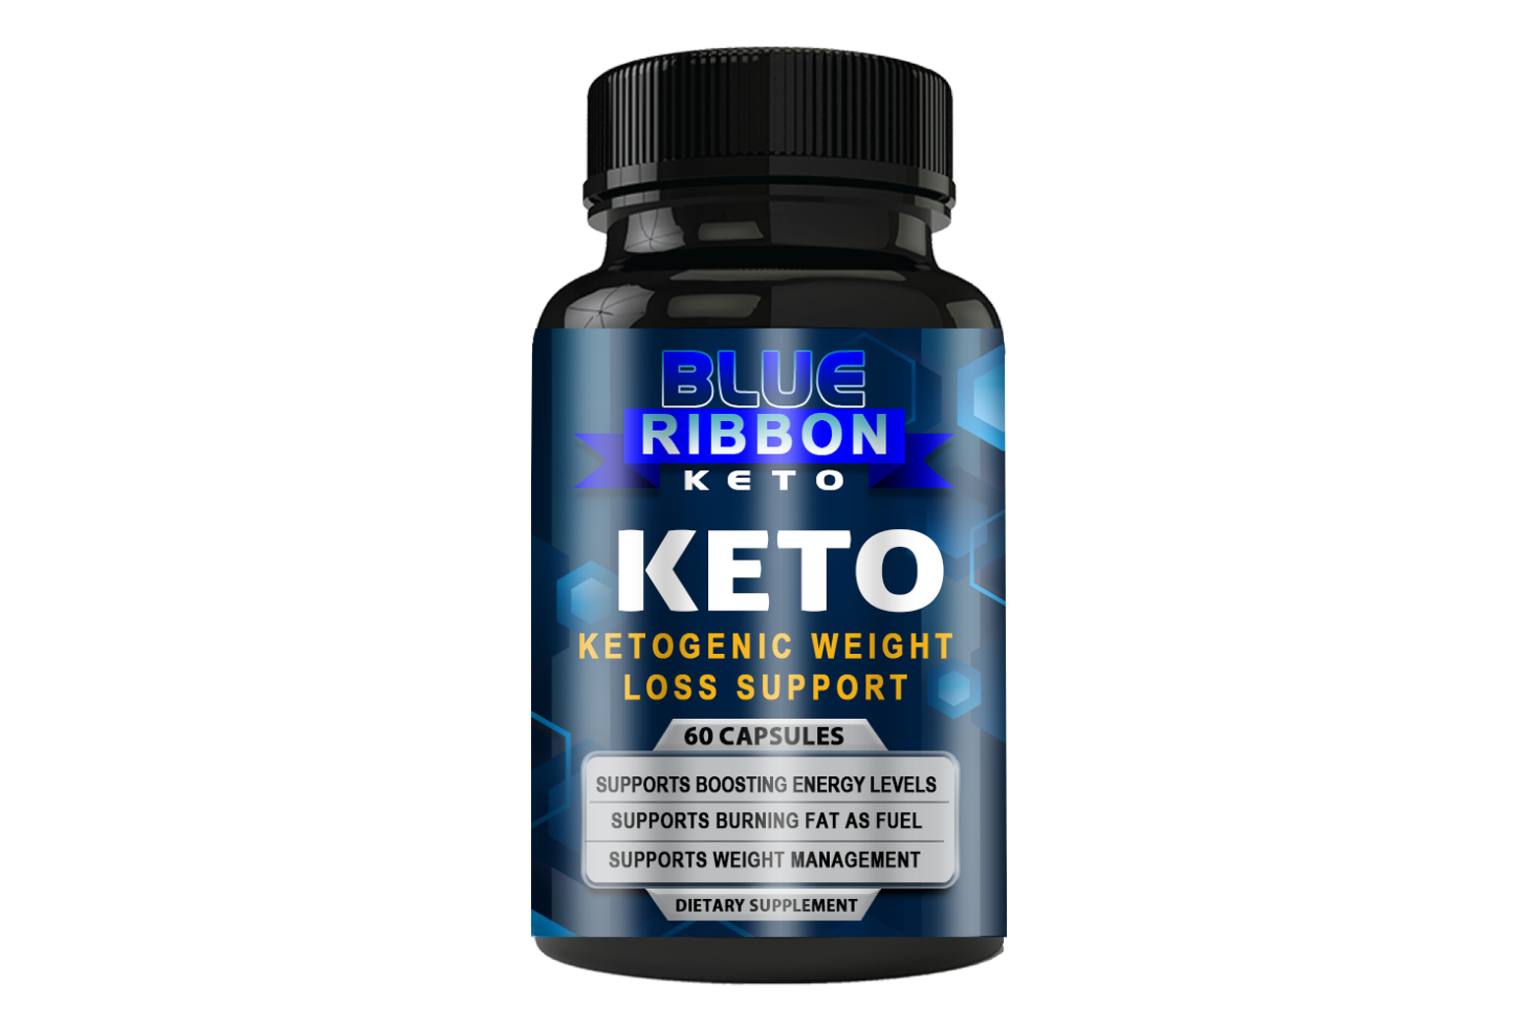 Blue-Ribbon-Keto-Keto-Bottle-1-1536x1013.png